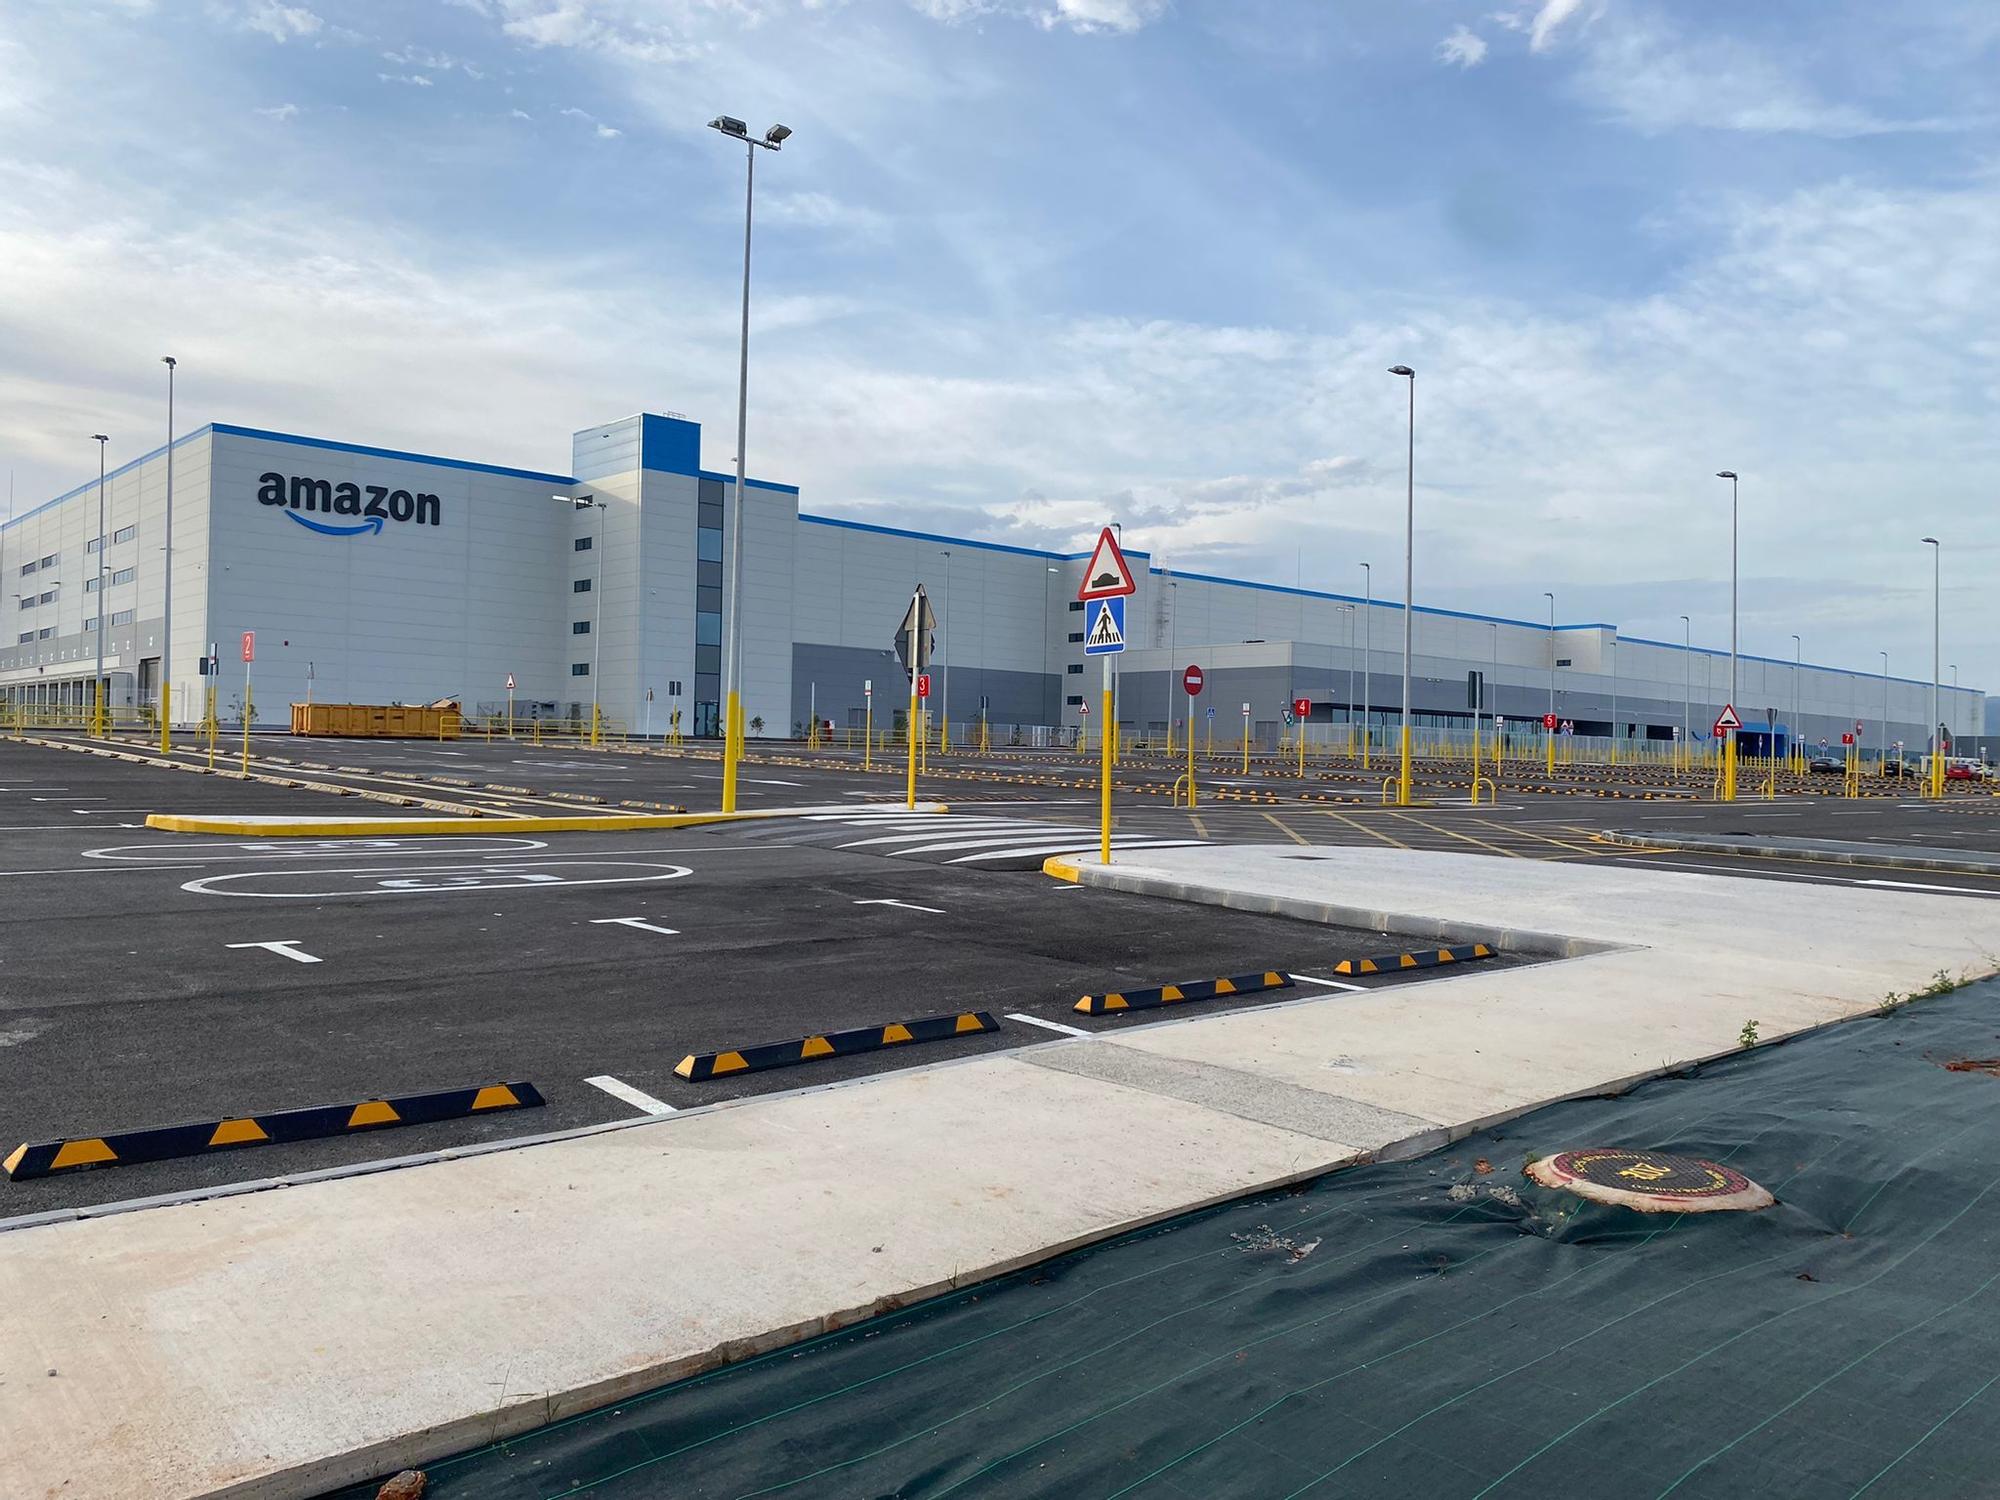 Así se encuentra el centro logístico de Amazon a falta de unas semanas para abrir